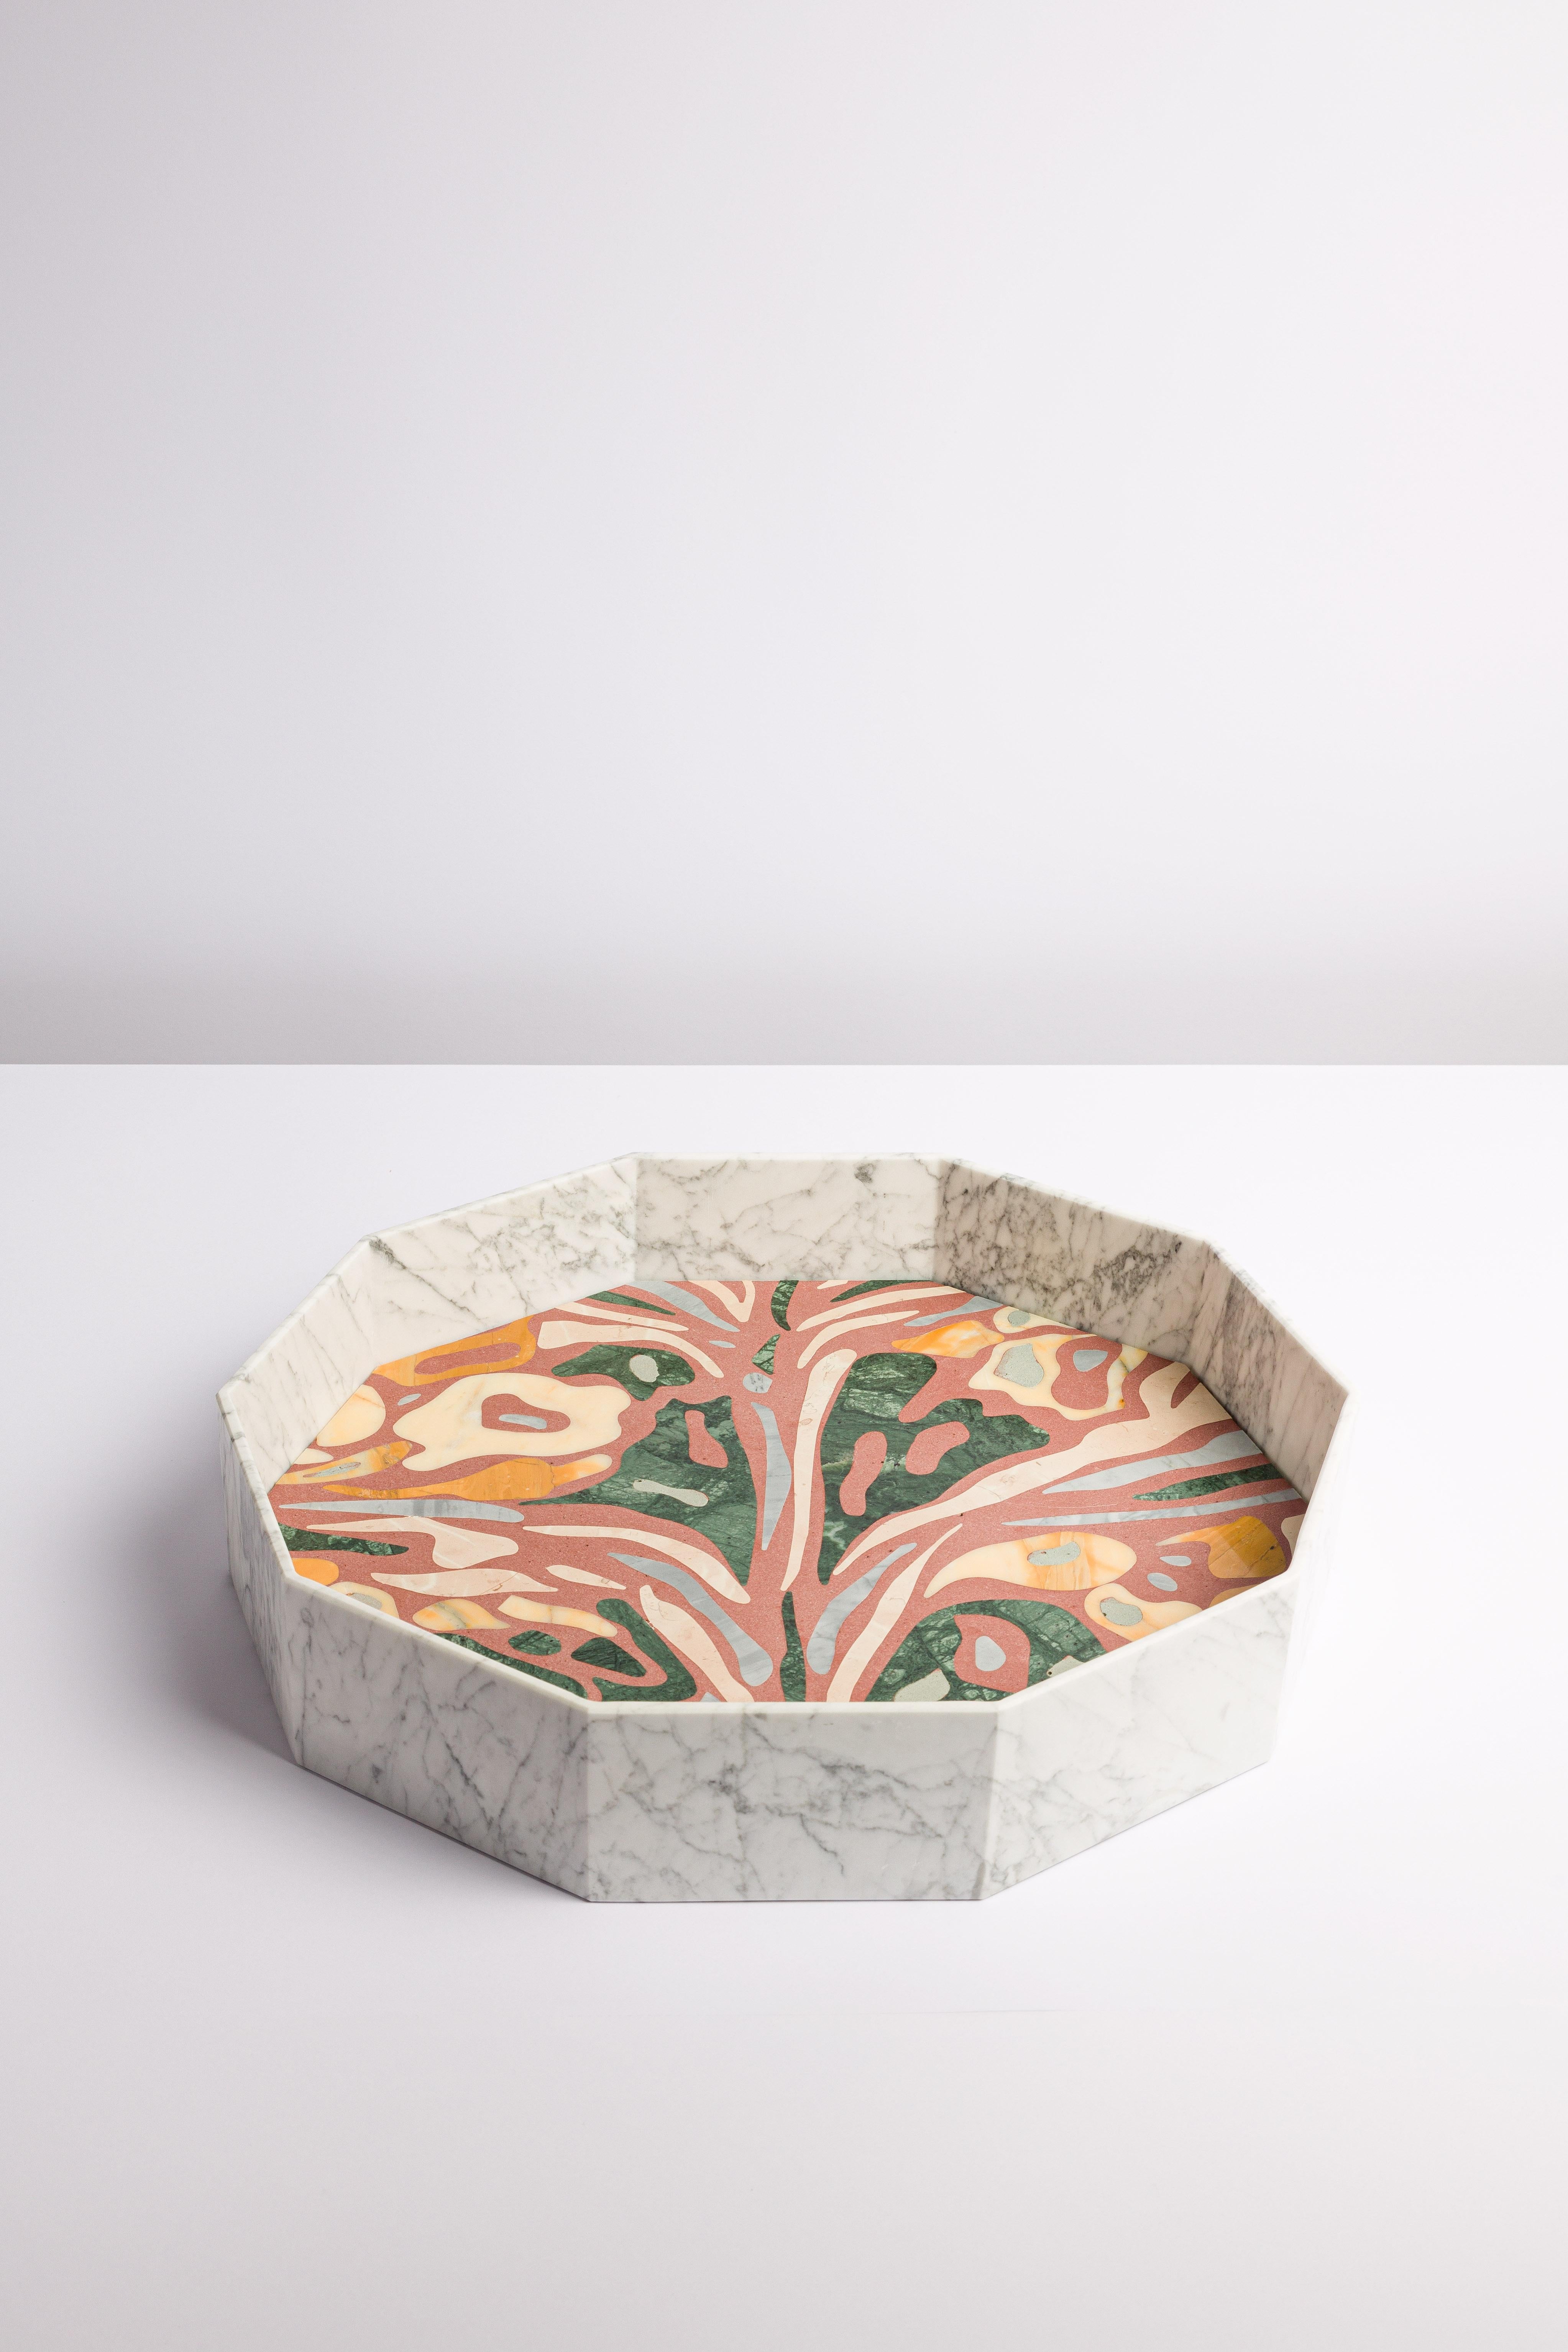 Moderno Zanellato/Bortotto vassoio / Vaso in marmo Verde Guatemala  For Sale 2